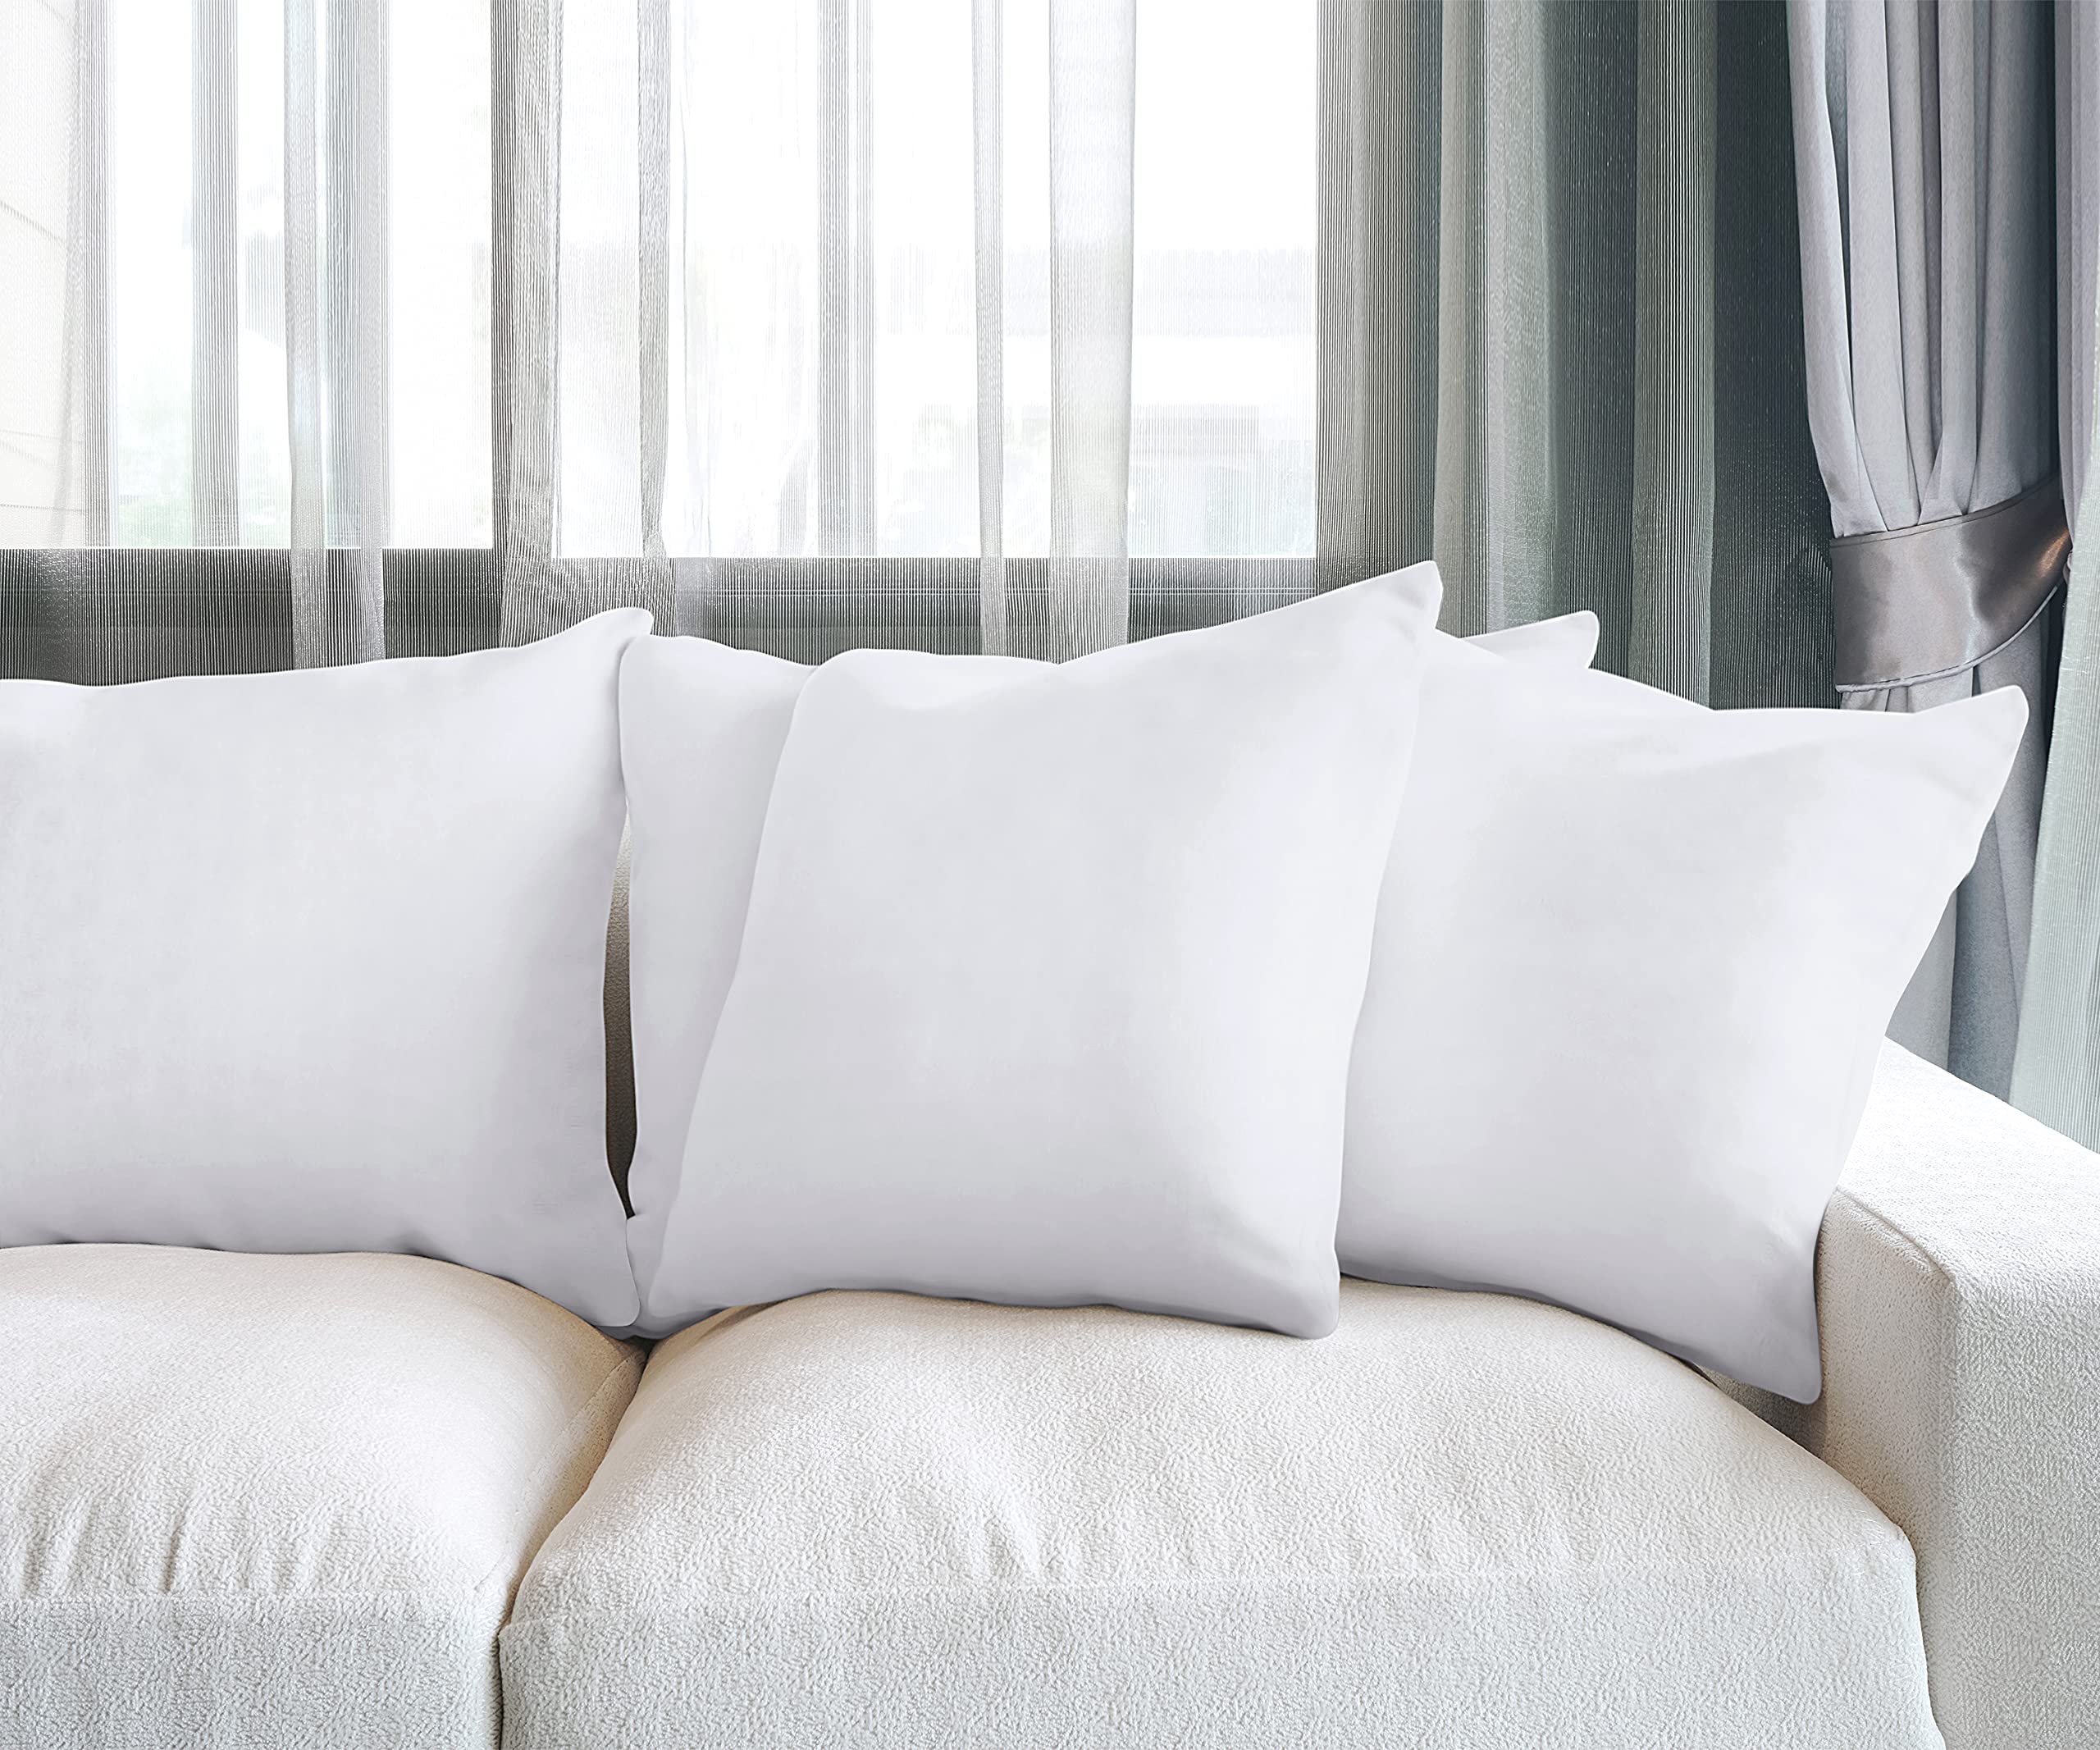 Mua Utopia Bedding Throw Pillows (Set of 4, White), 20 x 20 Inches ...